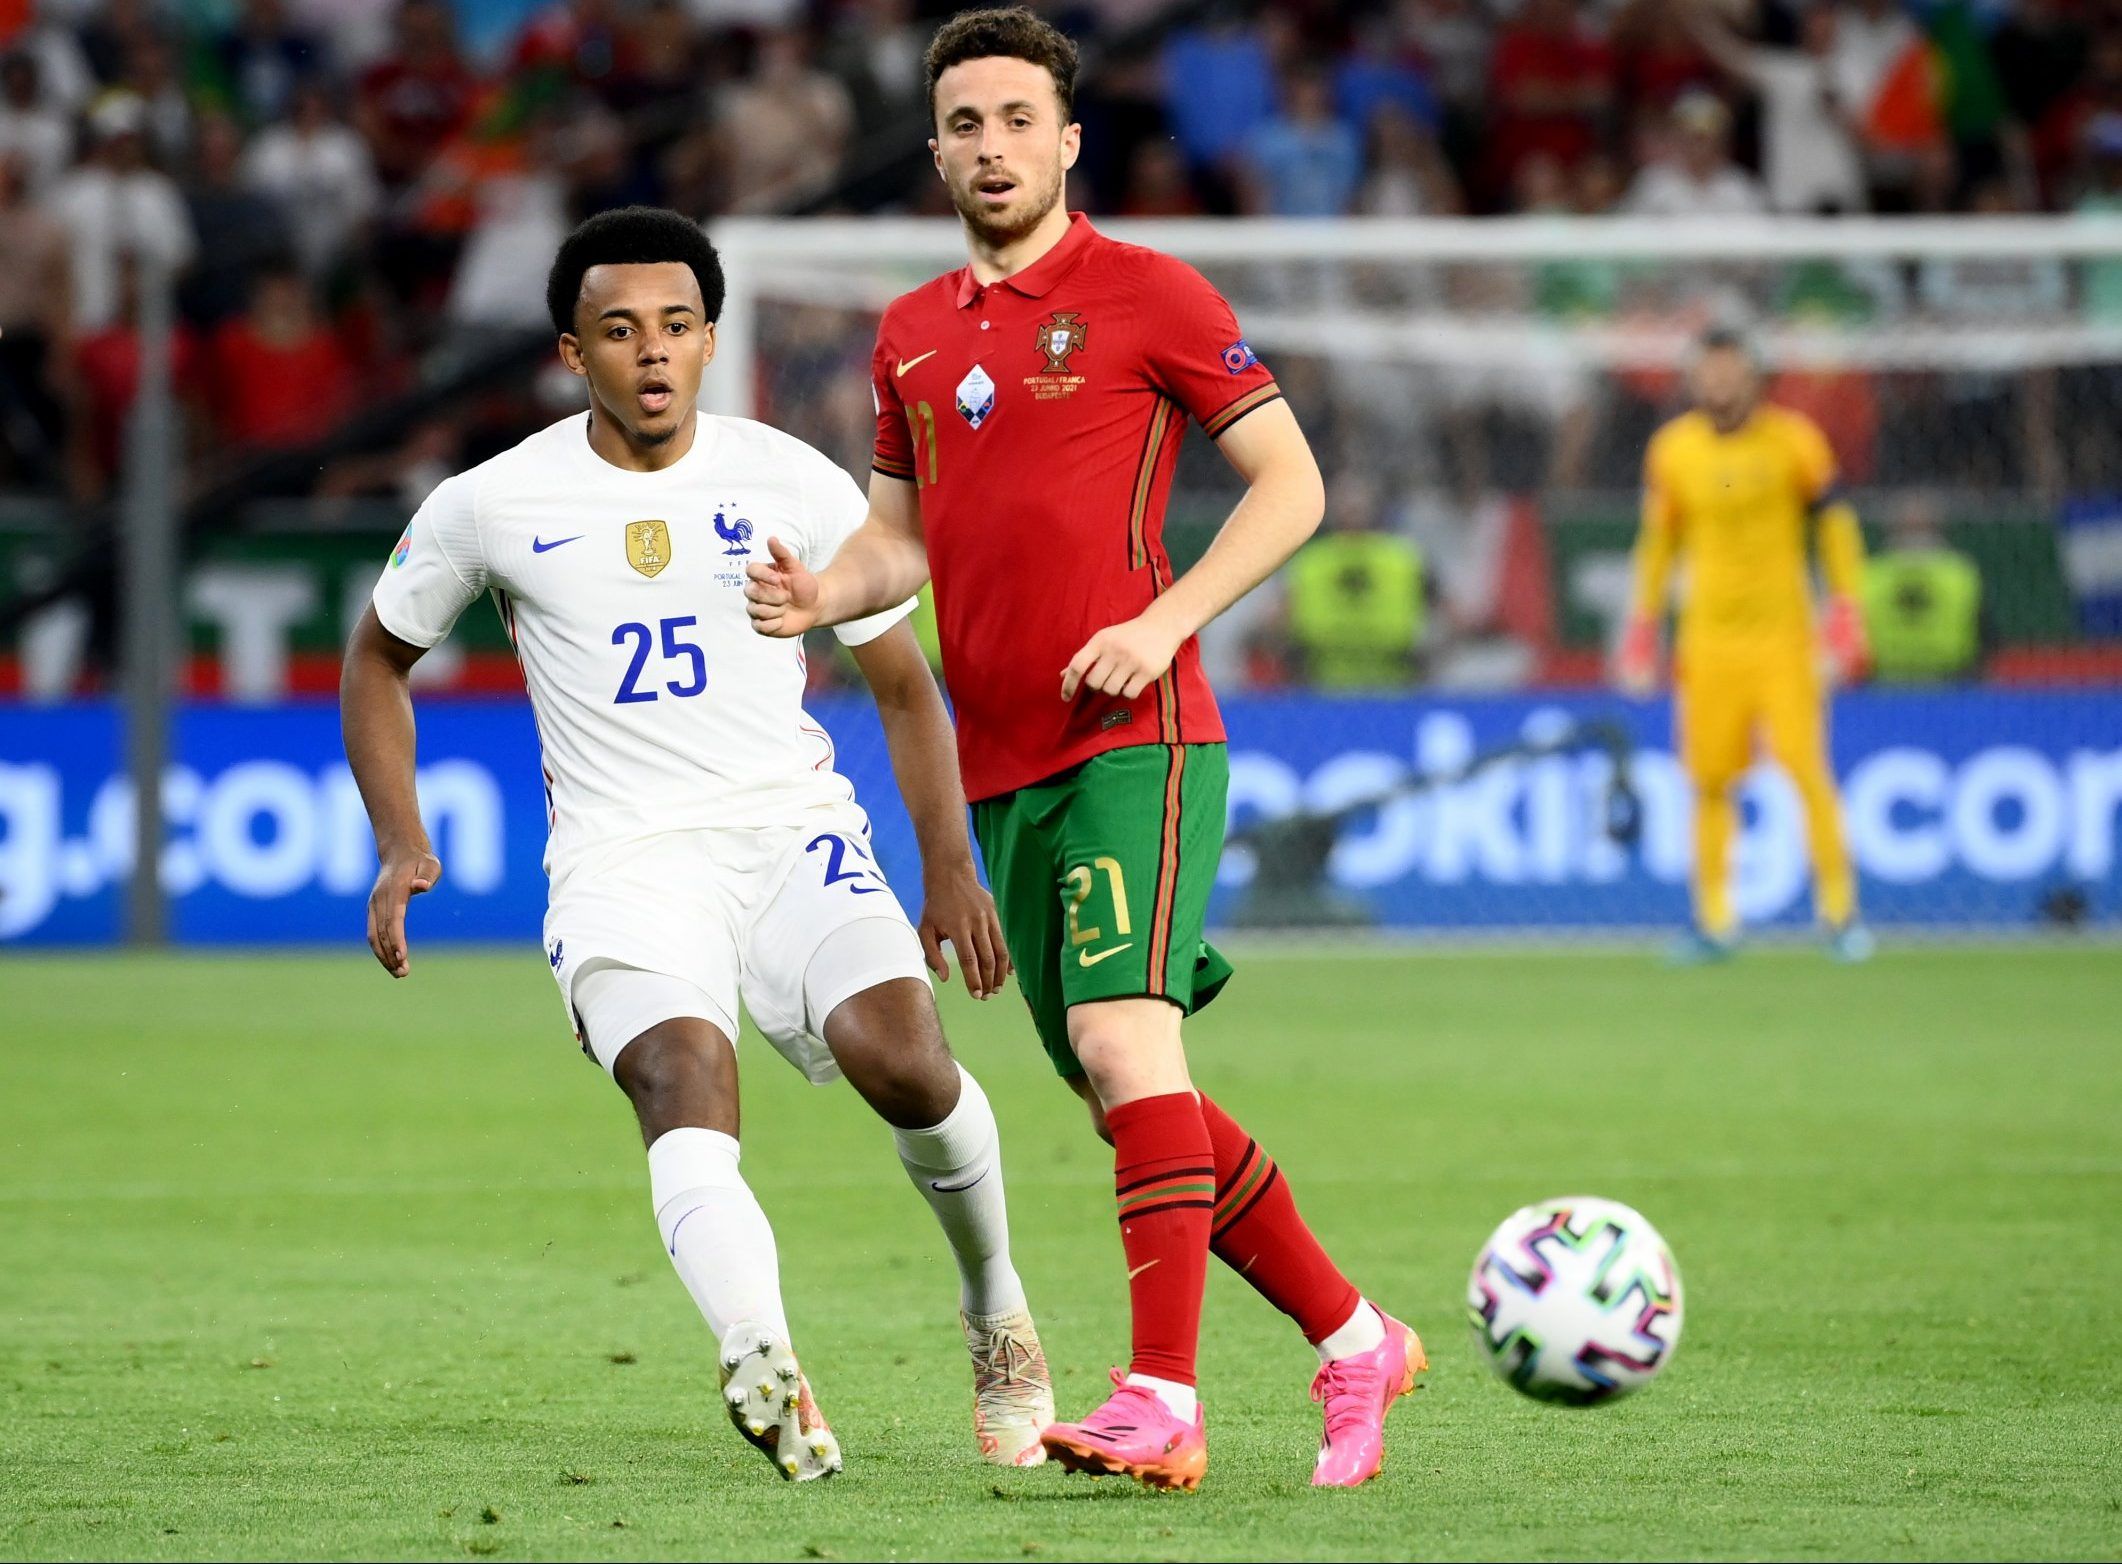 france defender jules kounde in action against portugal winger diogo jota at euro 2020